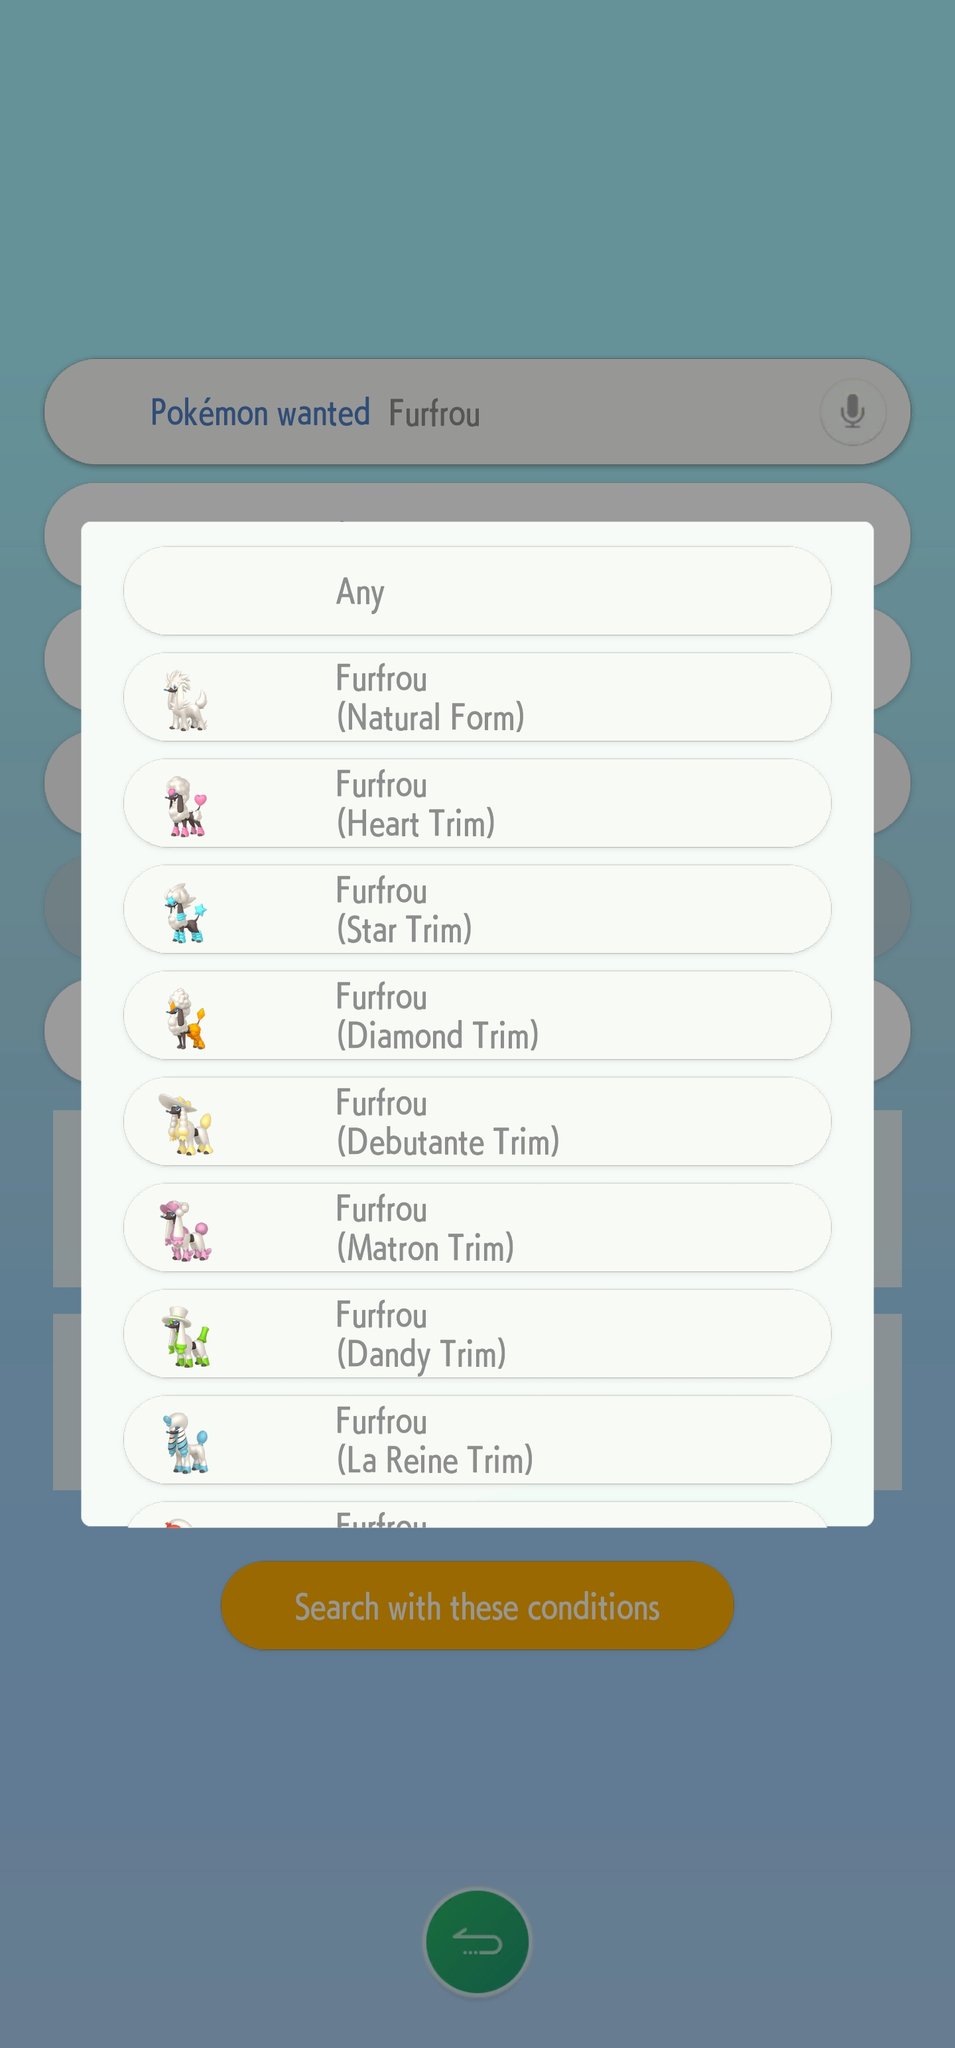 Furfrou regresará en Pokémon Legends: Z-A 17